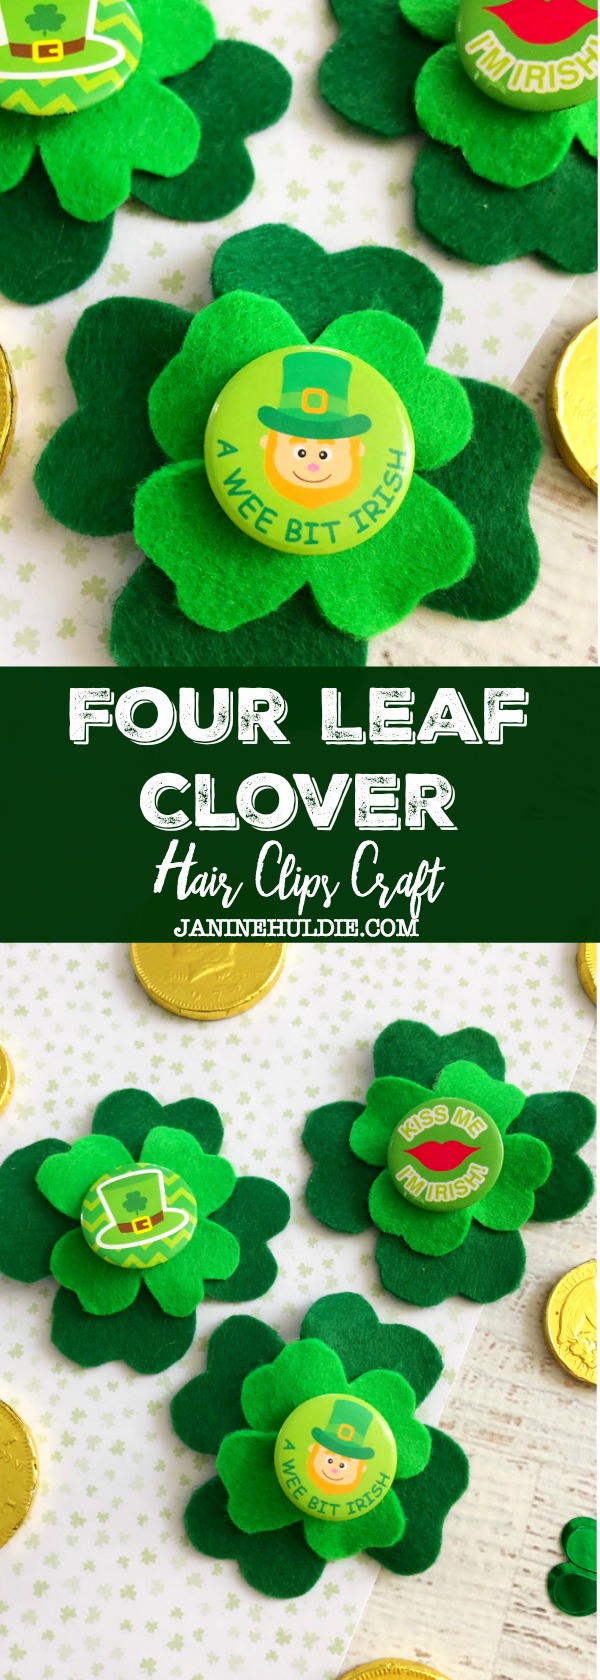 Four Leaf Clover Hair Clips Craft